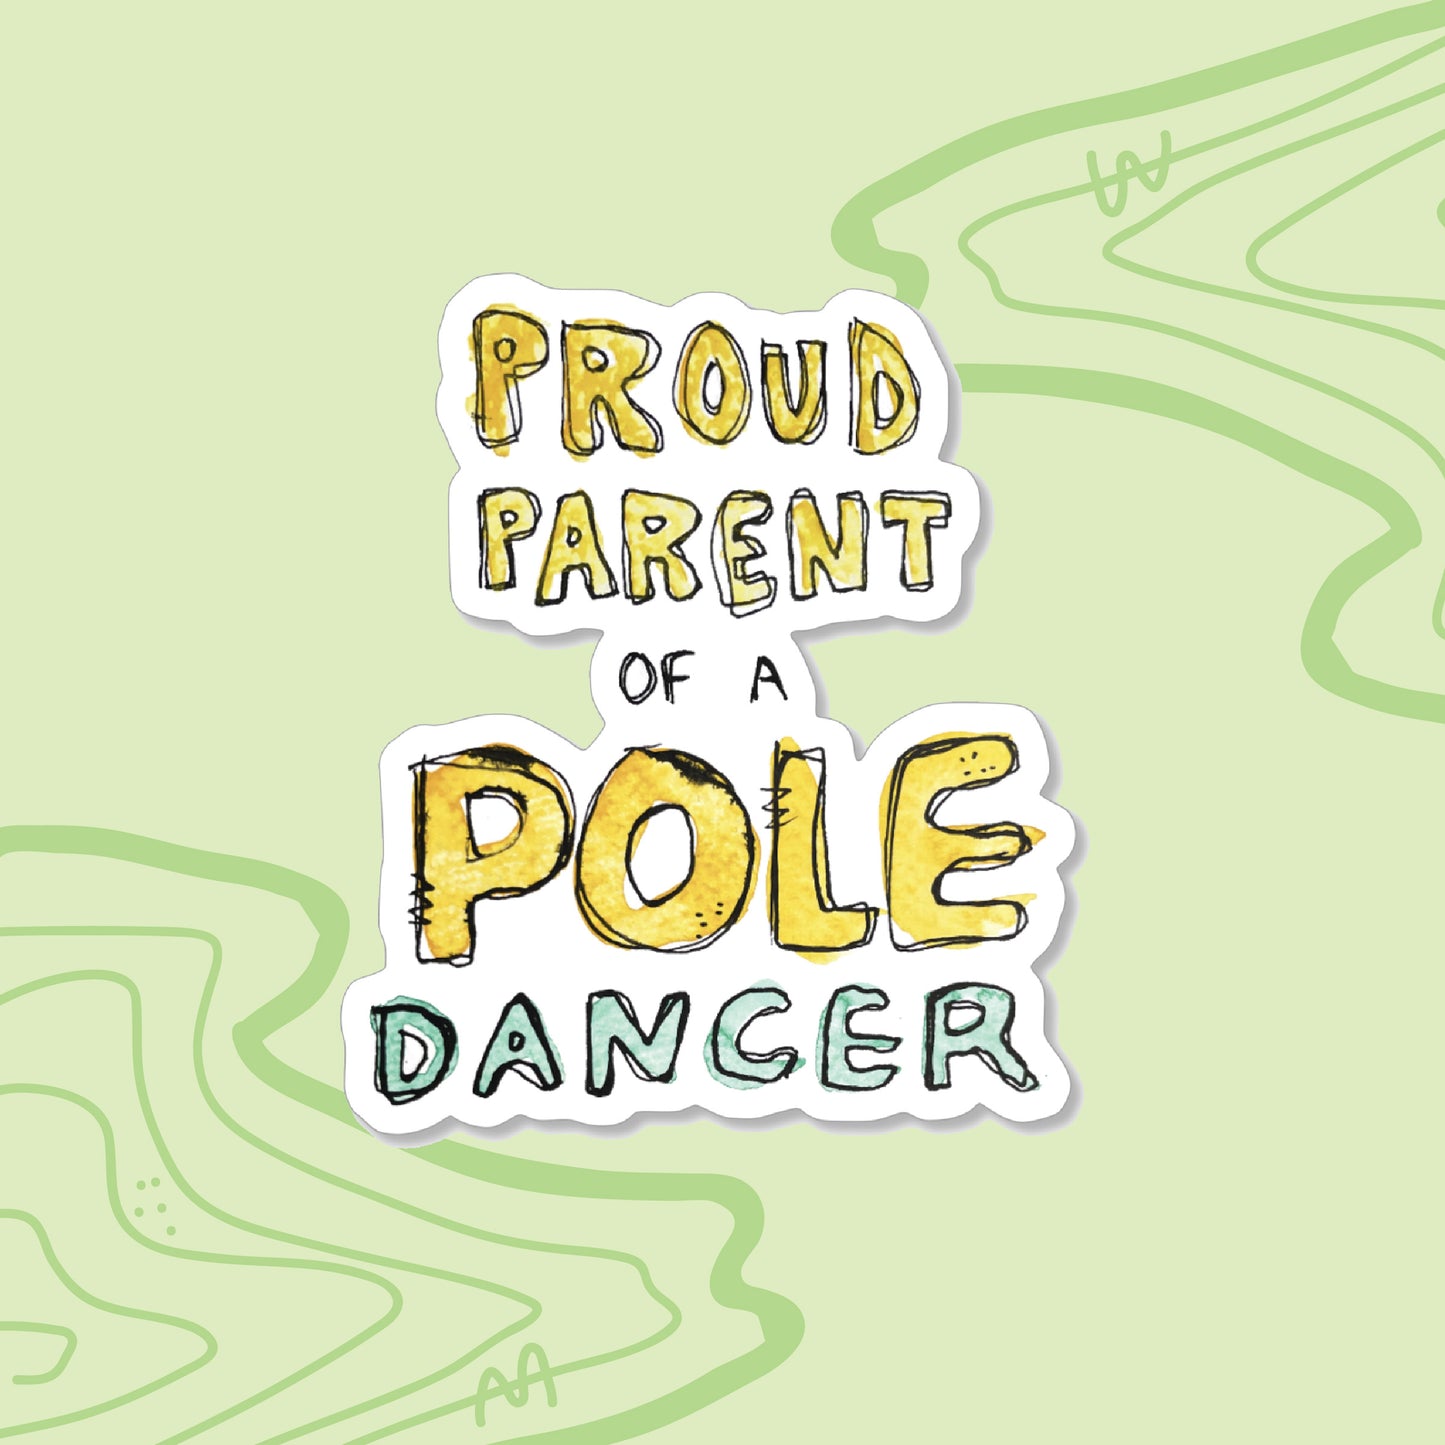 "Proud Parent of a Pole Dancer" Sticker